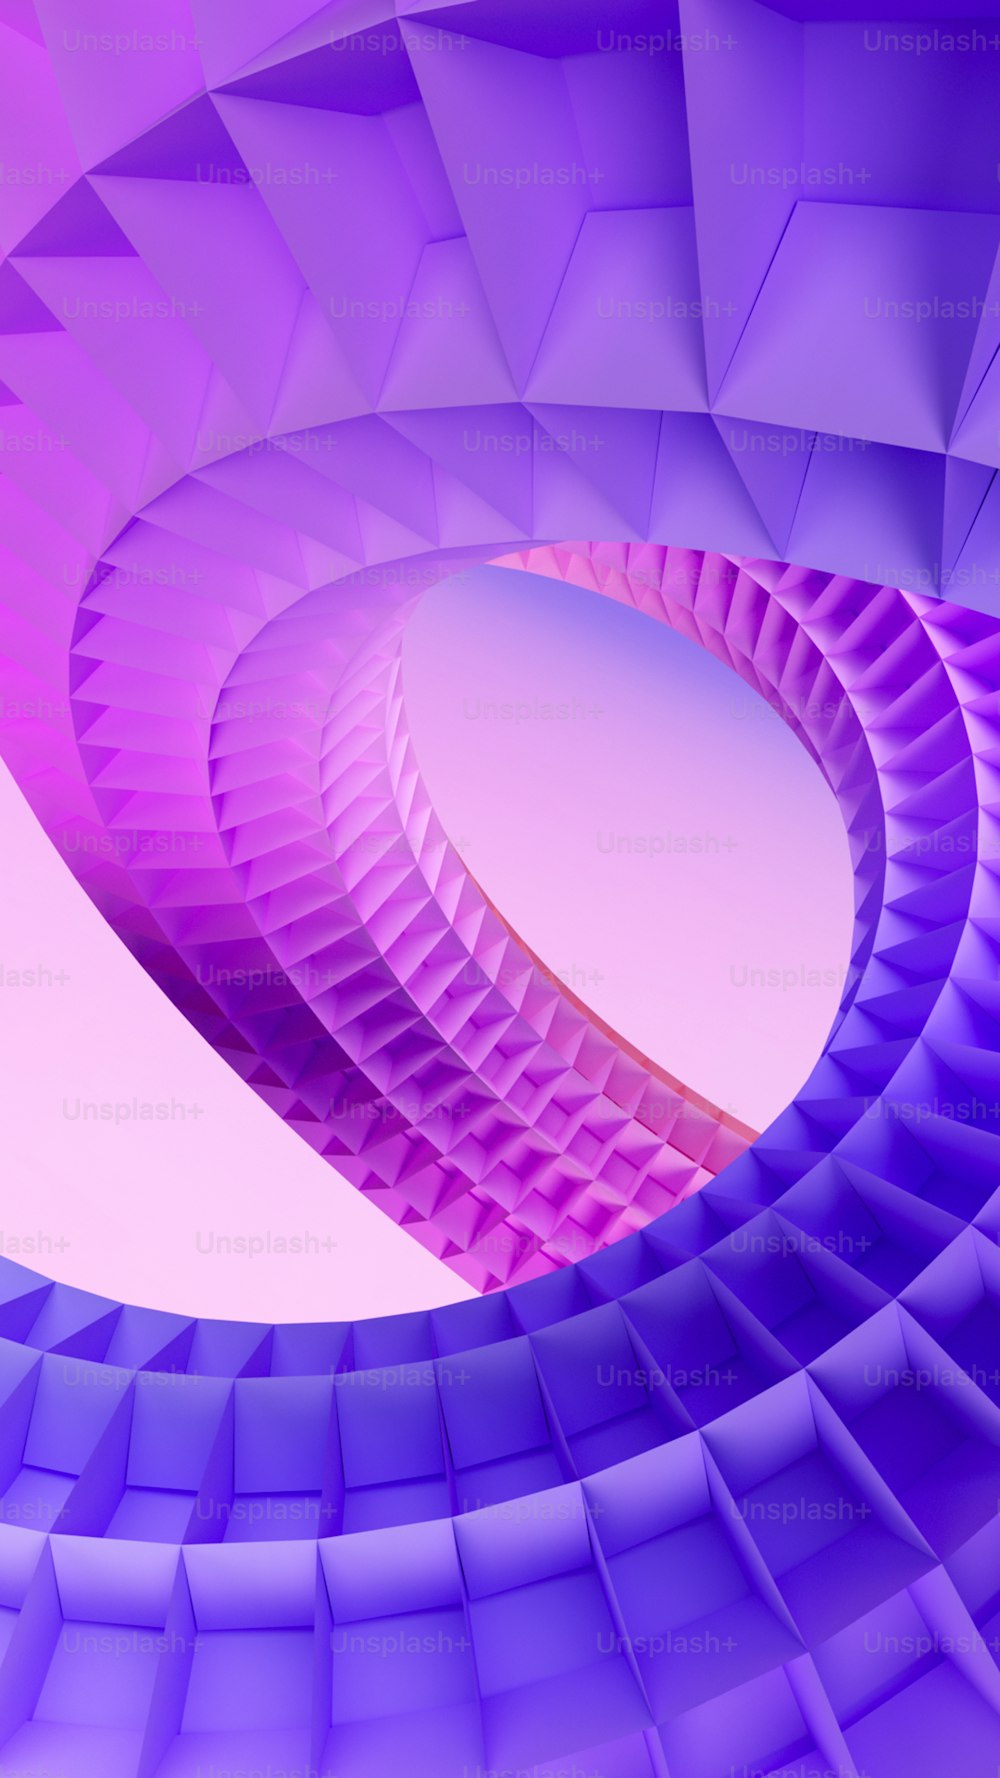 Ein abstraktes Bild einer spiralförmigen Struktur